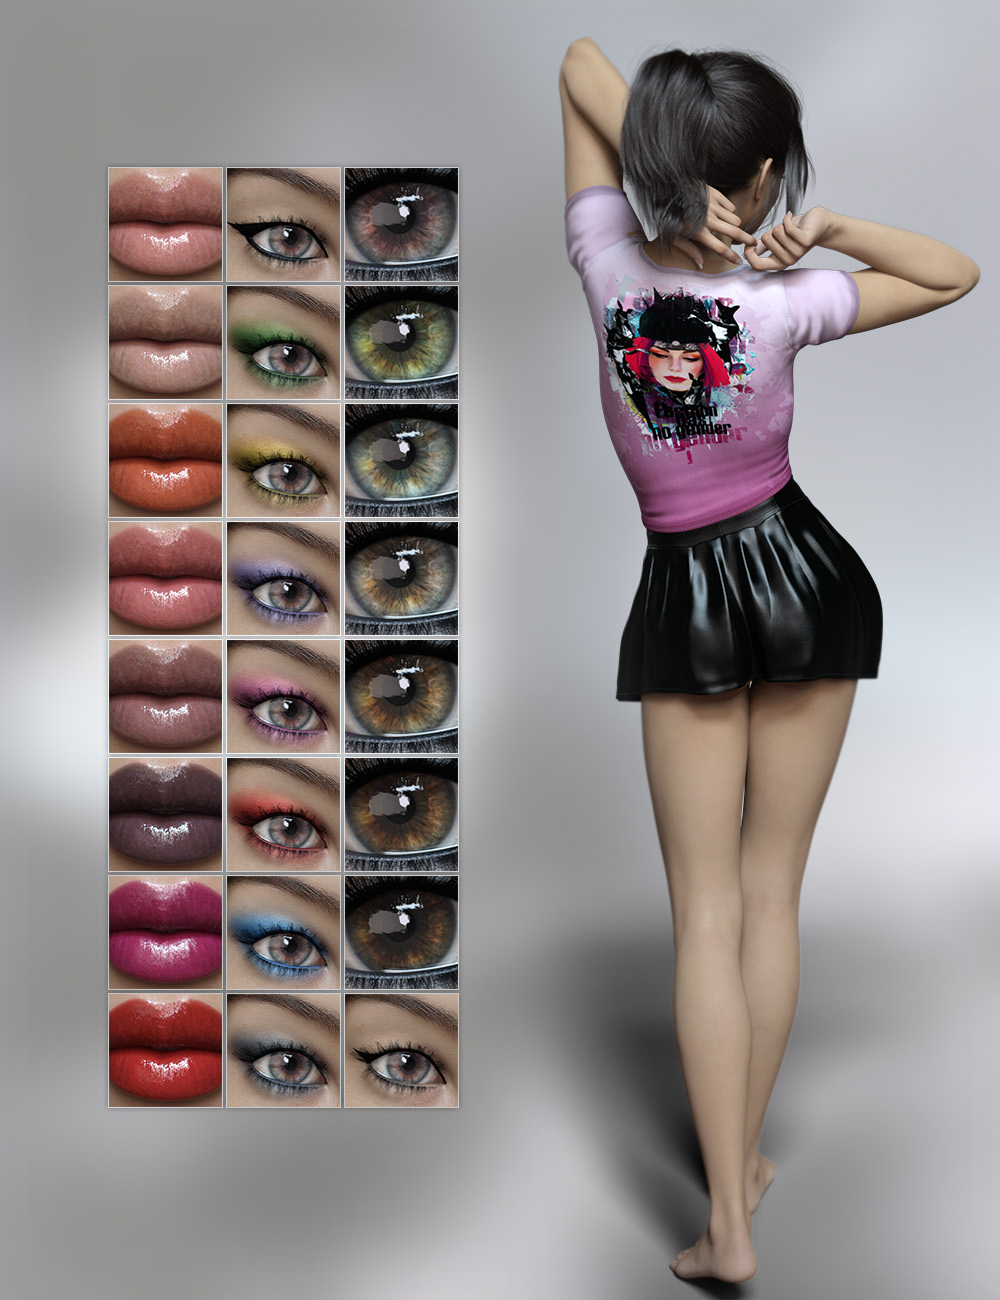 FWSA Maelynn HD for Teen Kaylee 8 by: Fred Winkler ArtSabby, 3D Models by Daz 3D